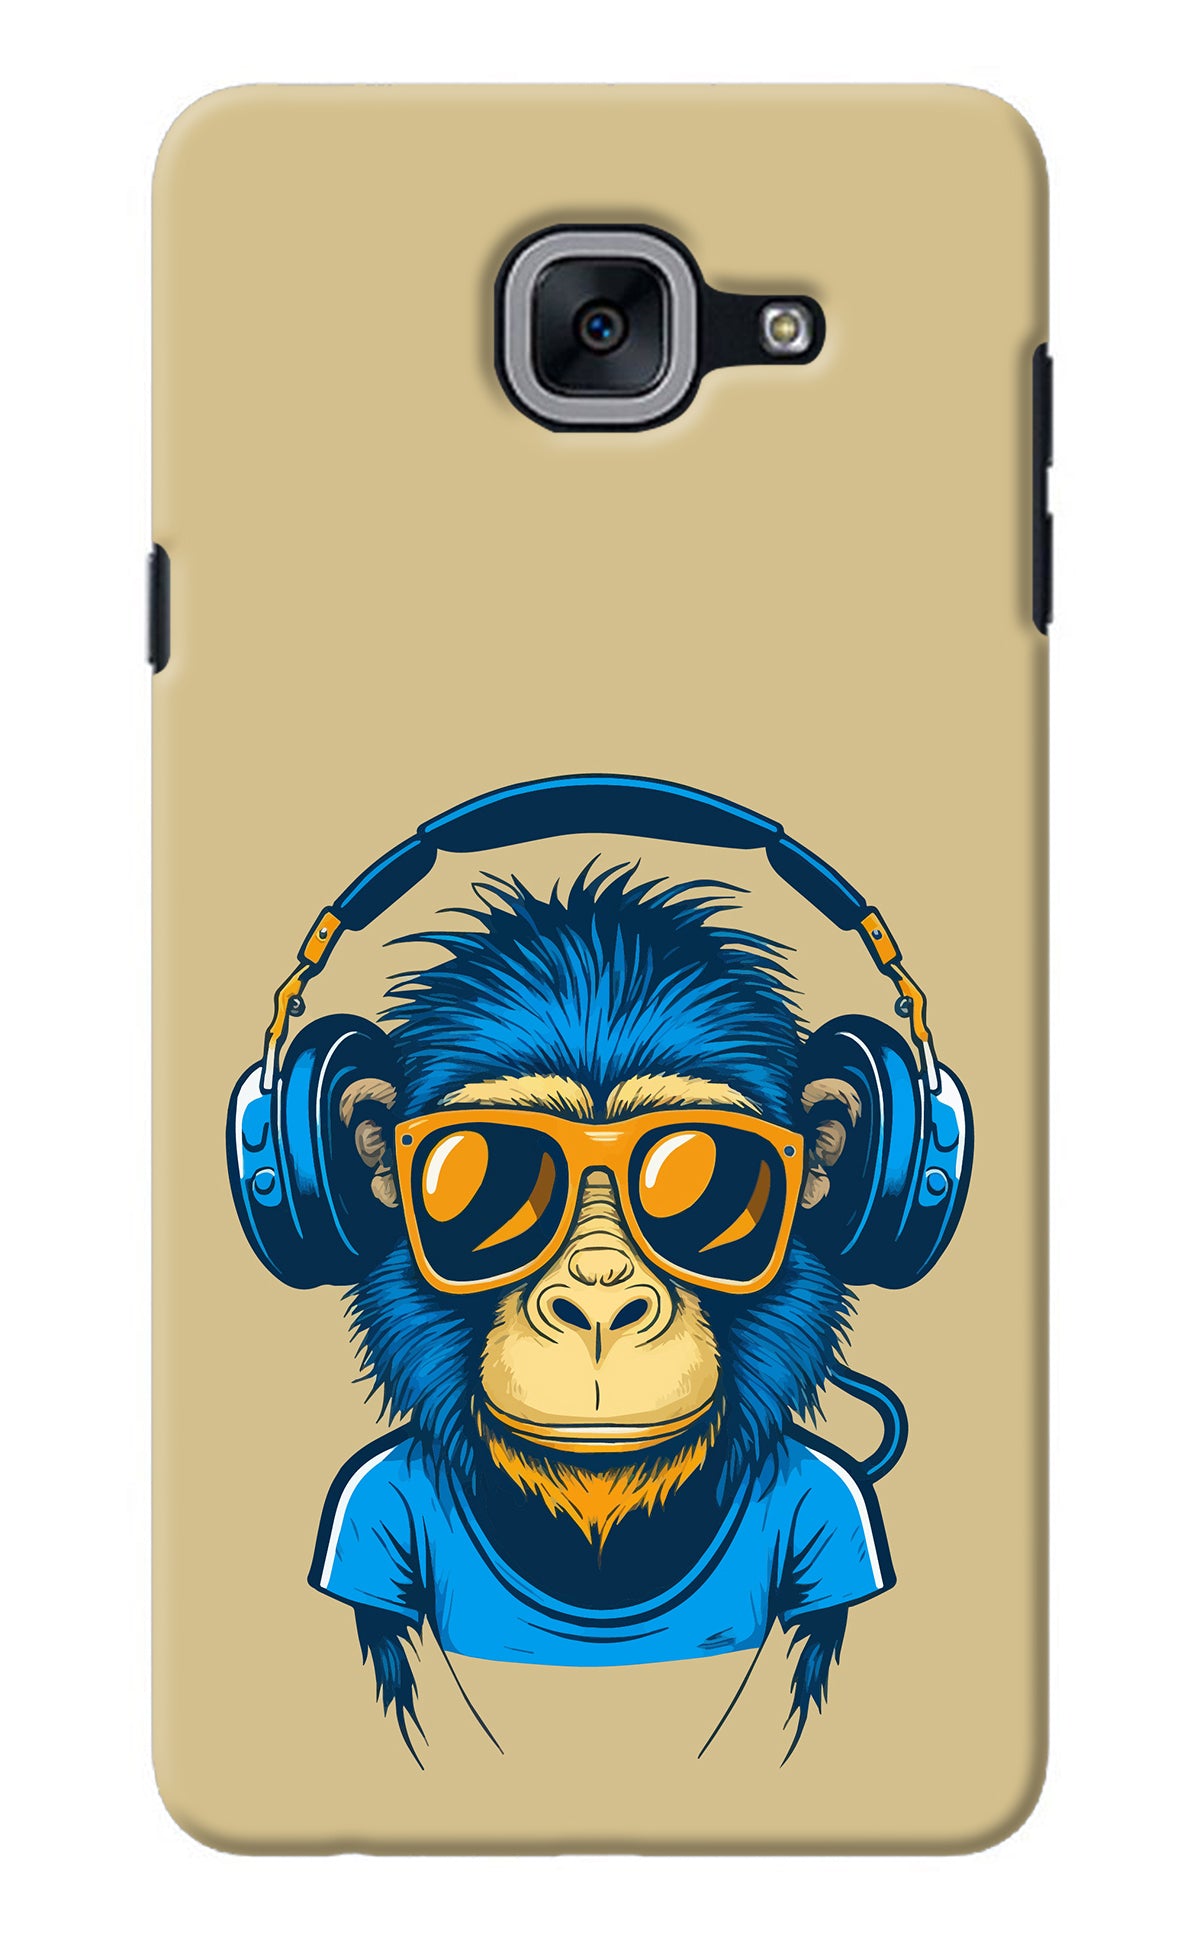 Monkey Headphone Samsung J7 Max Back Cover